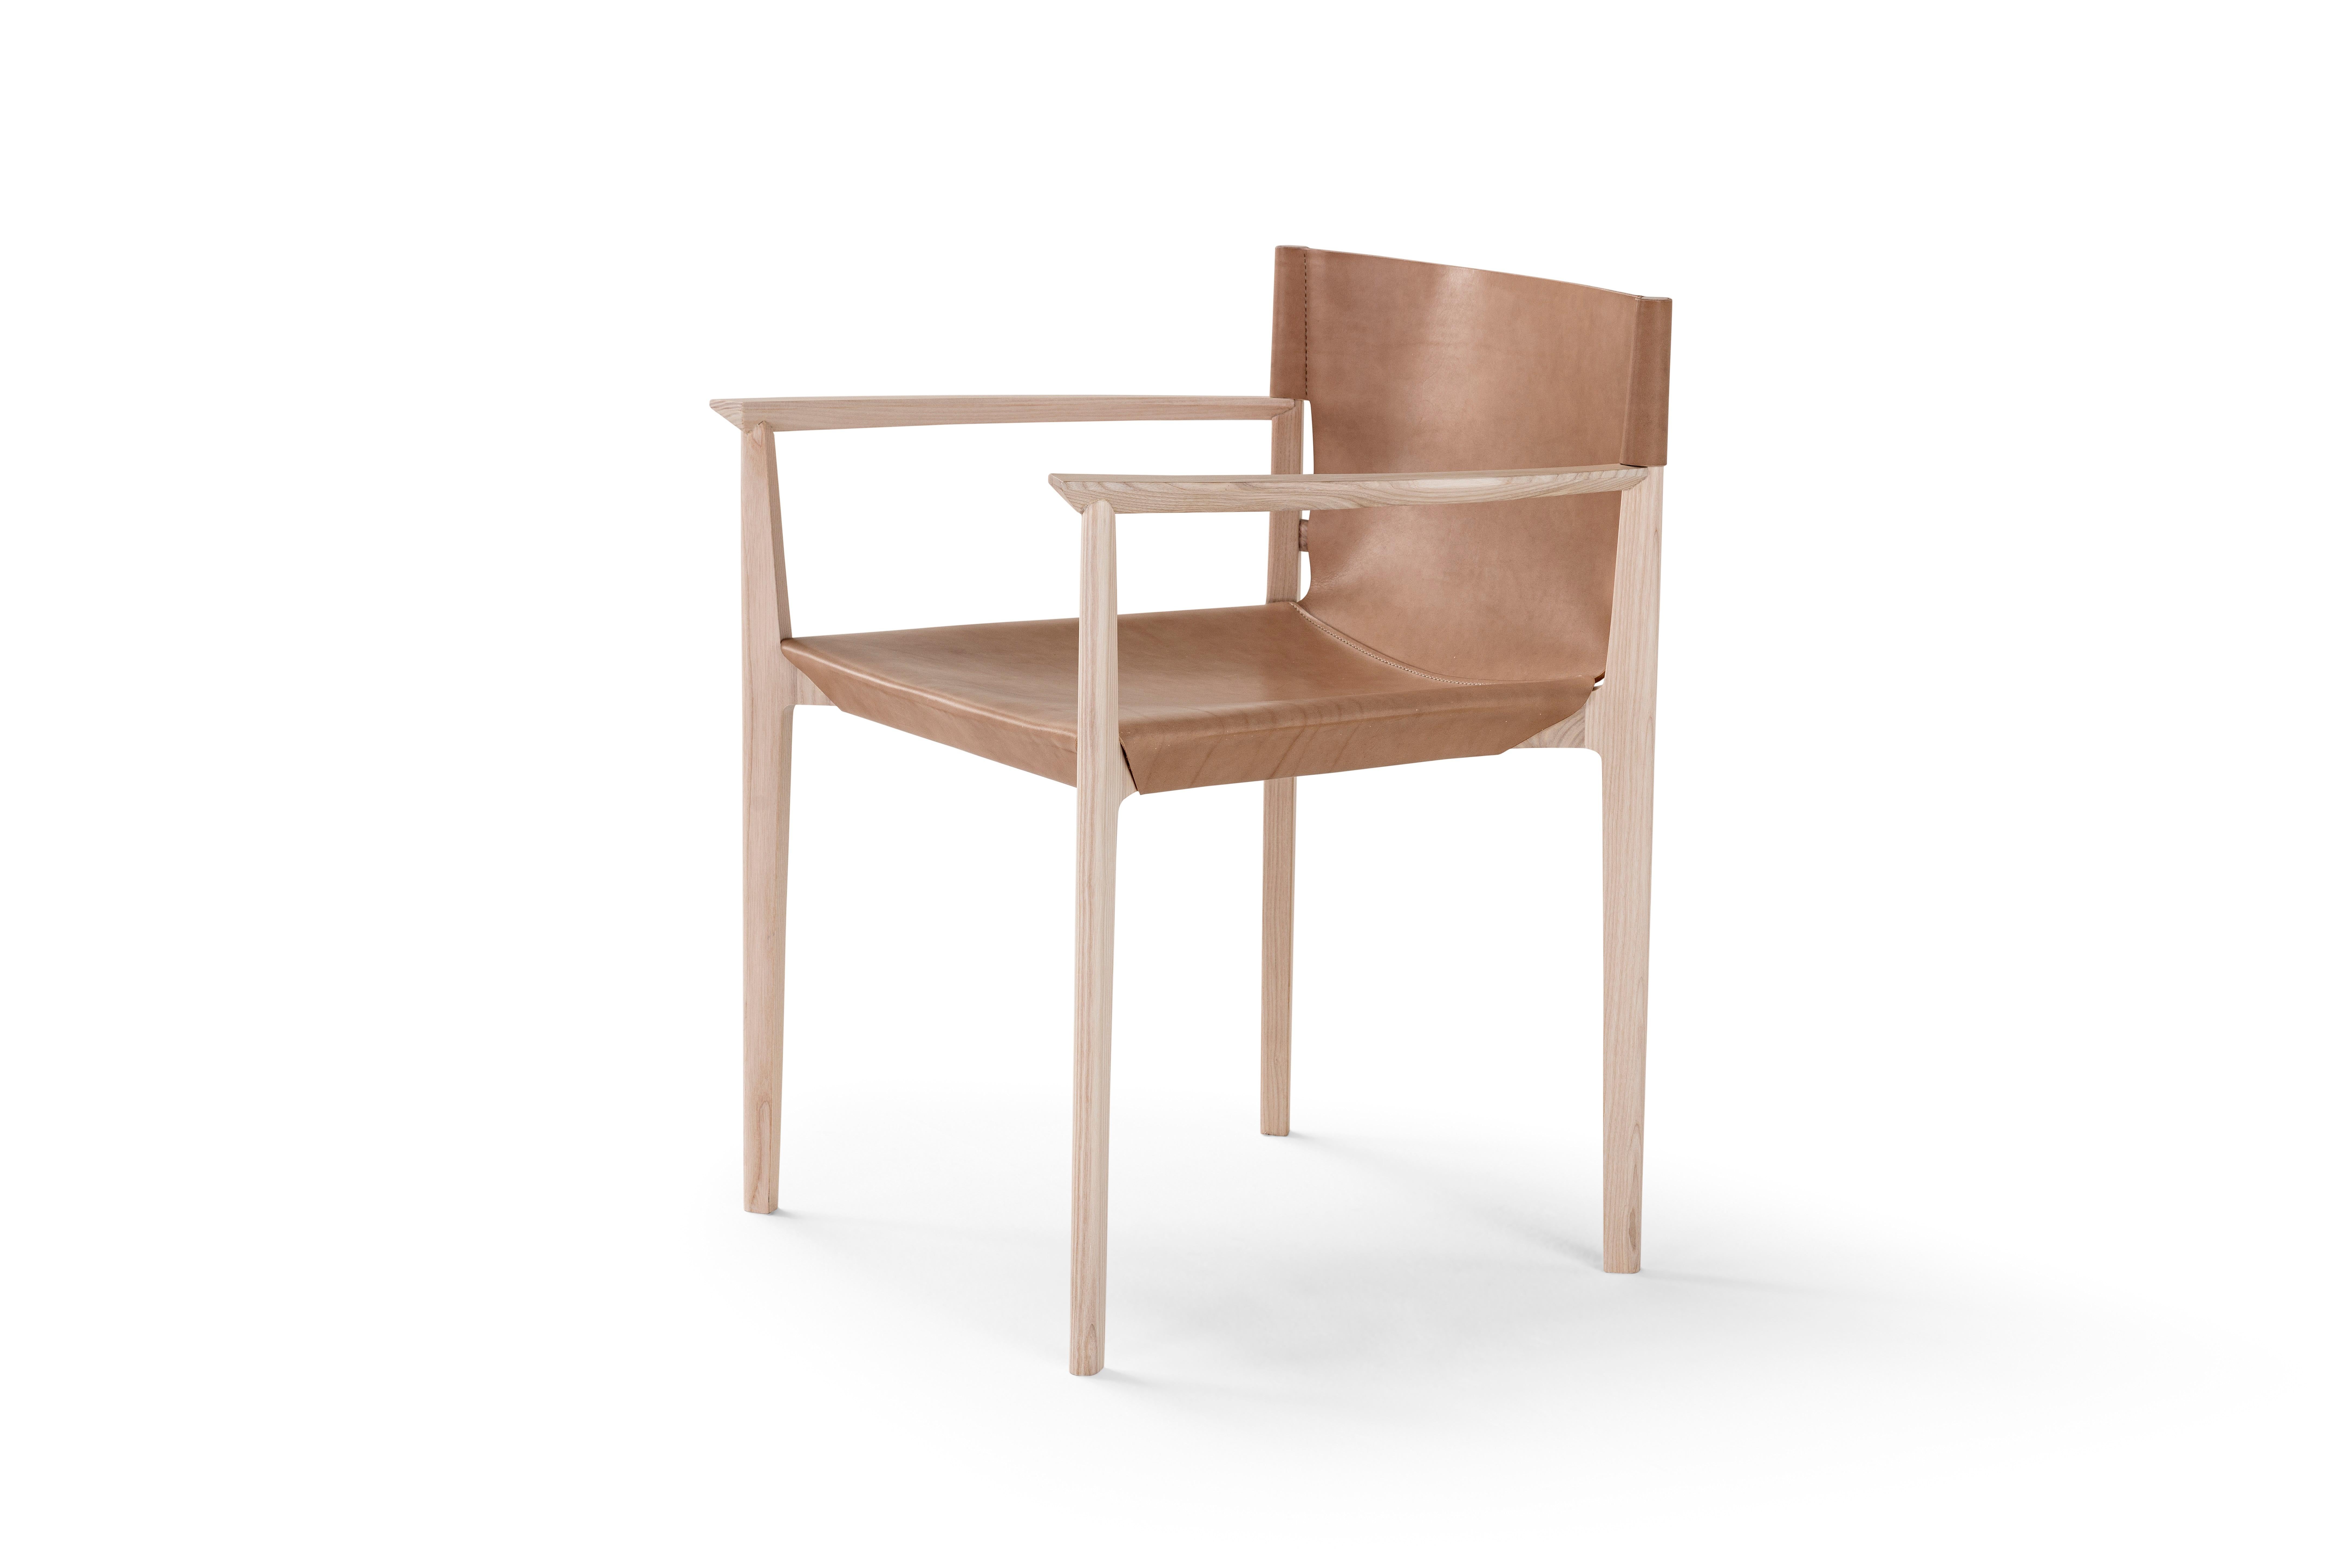 Holzstuhl 'Stelze', Cuoio & Holz
Designer Stefano Grassi

Höhe: 75 cm 
Breite: 61,5 cm
Tiefe: 60 cm 

STILT ist der Stuhl aus essentiellem Design und ausgewogenen Formen, die an Gelassenheit und heimische Wärme erinnern. Seine Struktur aus